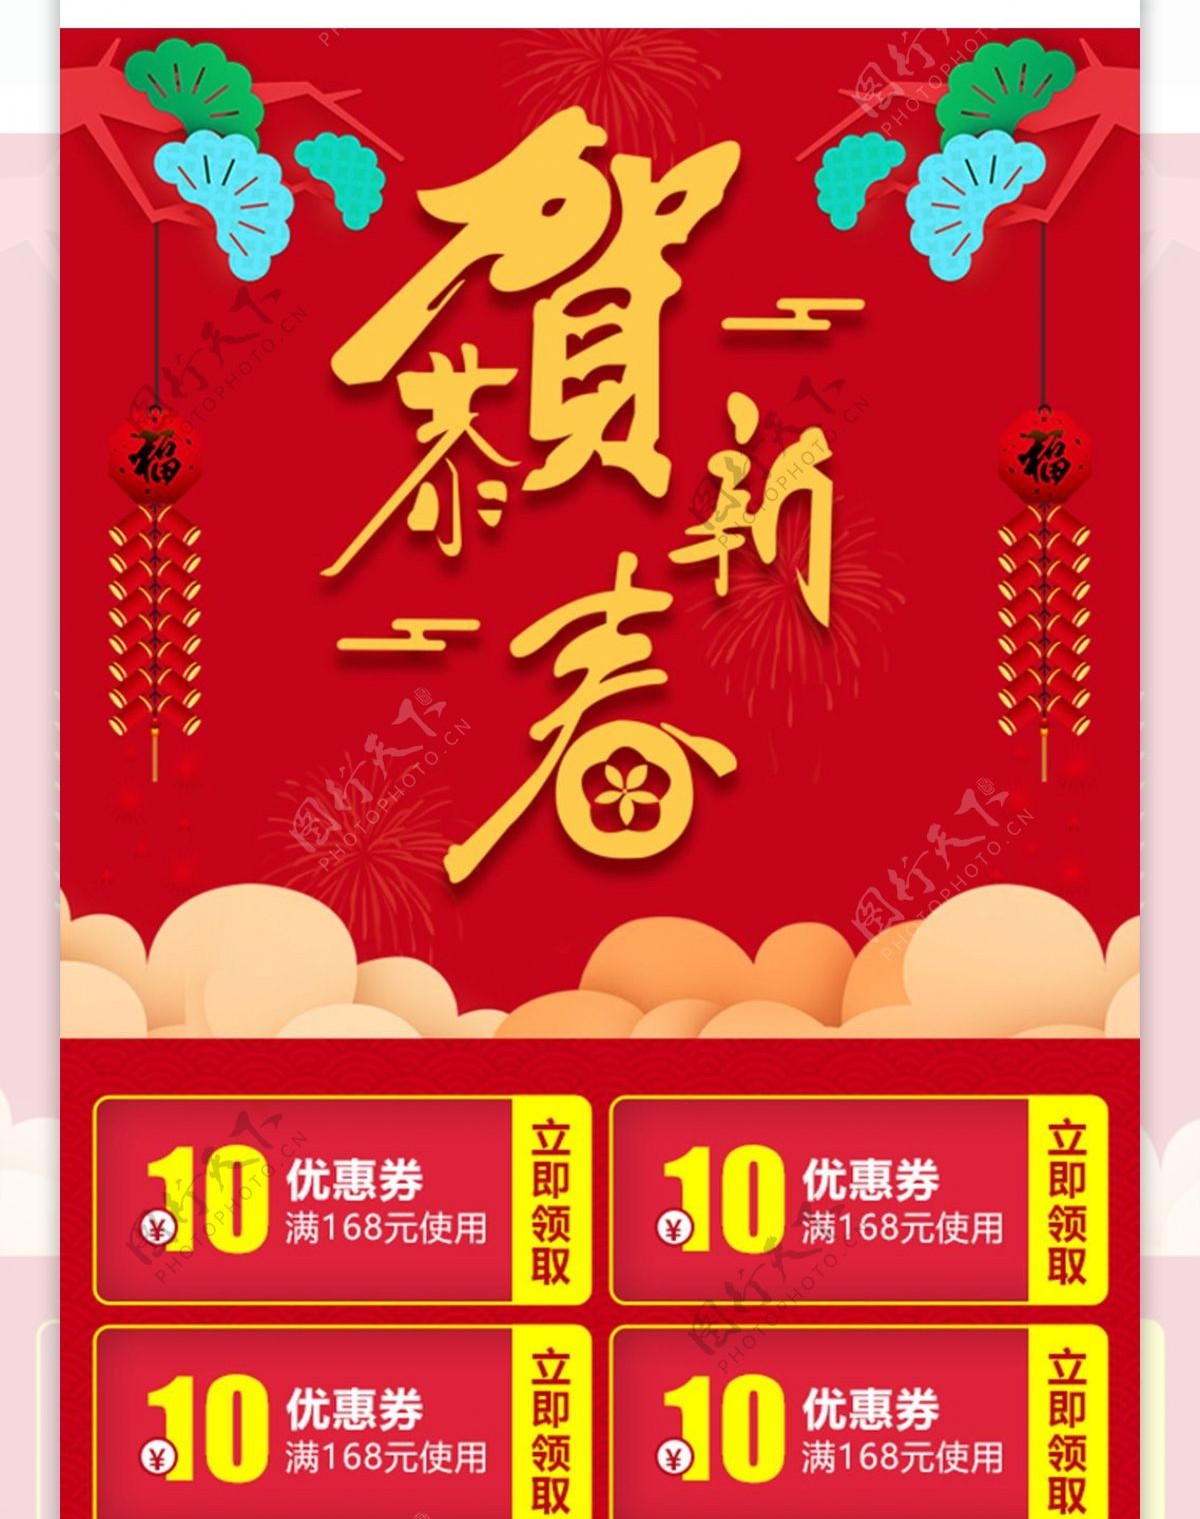 恭贺新春中国红金字移动首页模板